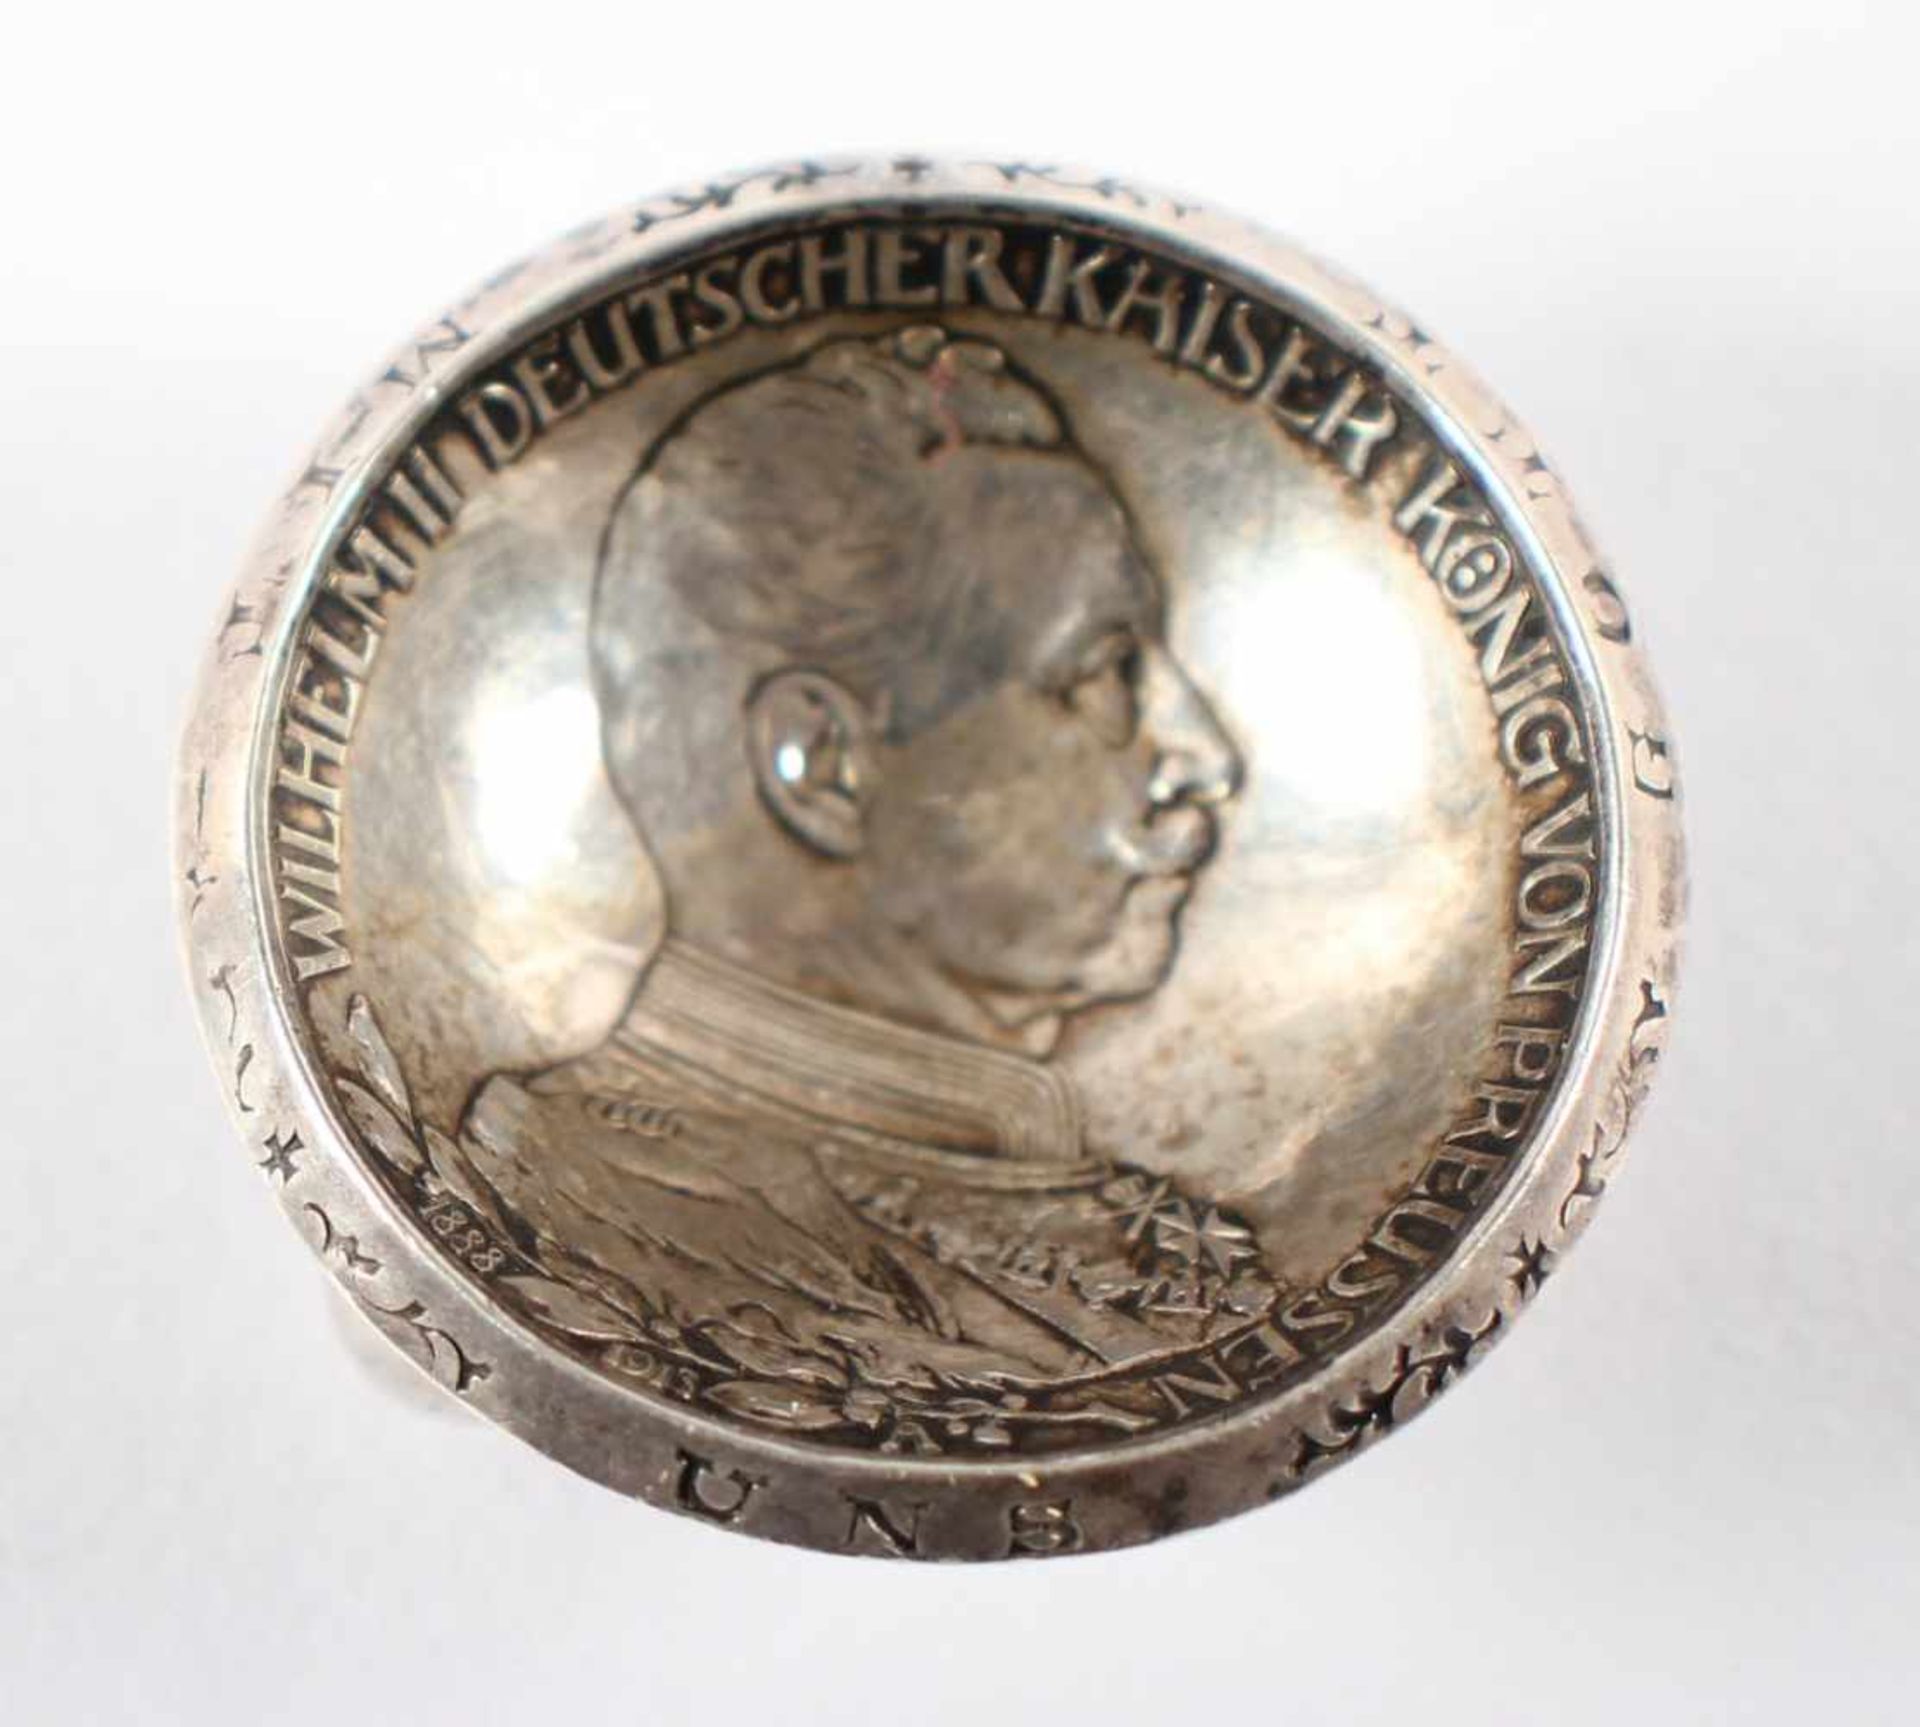 MÜNZ-SALIERE, 900/ooo, gedrückte preussische 3-Mark-Münze von 1913 auf drei Kugelfüßen, Dm 3, 17g,